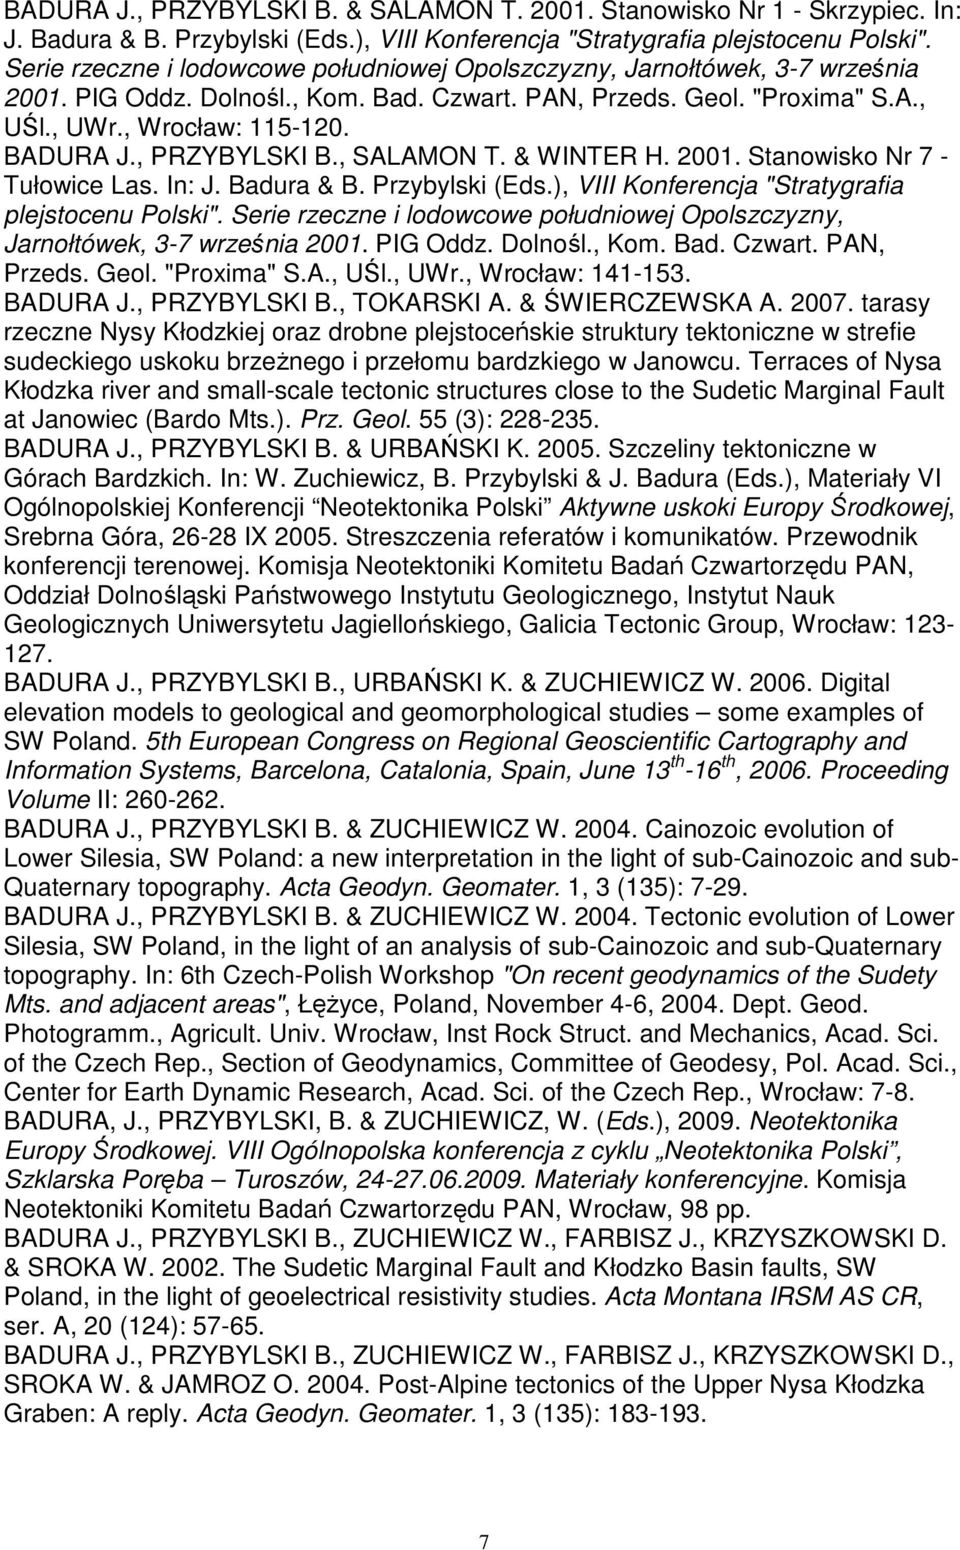 , PRZYBYLSKI B., SALAMON T. & WINTER H. 2001. Stanowisko Nr 7 - Tułowice Las. In: J. Badura & B. Przybylski (Eds.), VIII Konferencja "Stratygrafia plejstocenu Polski".